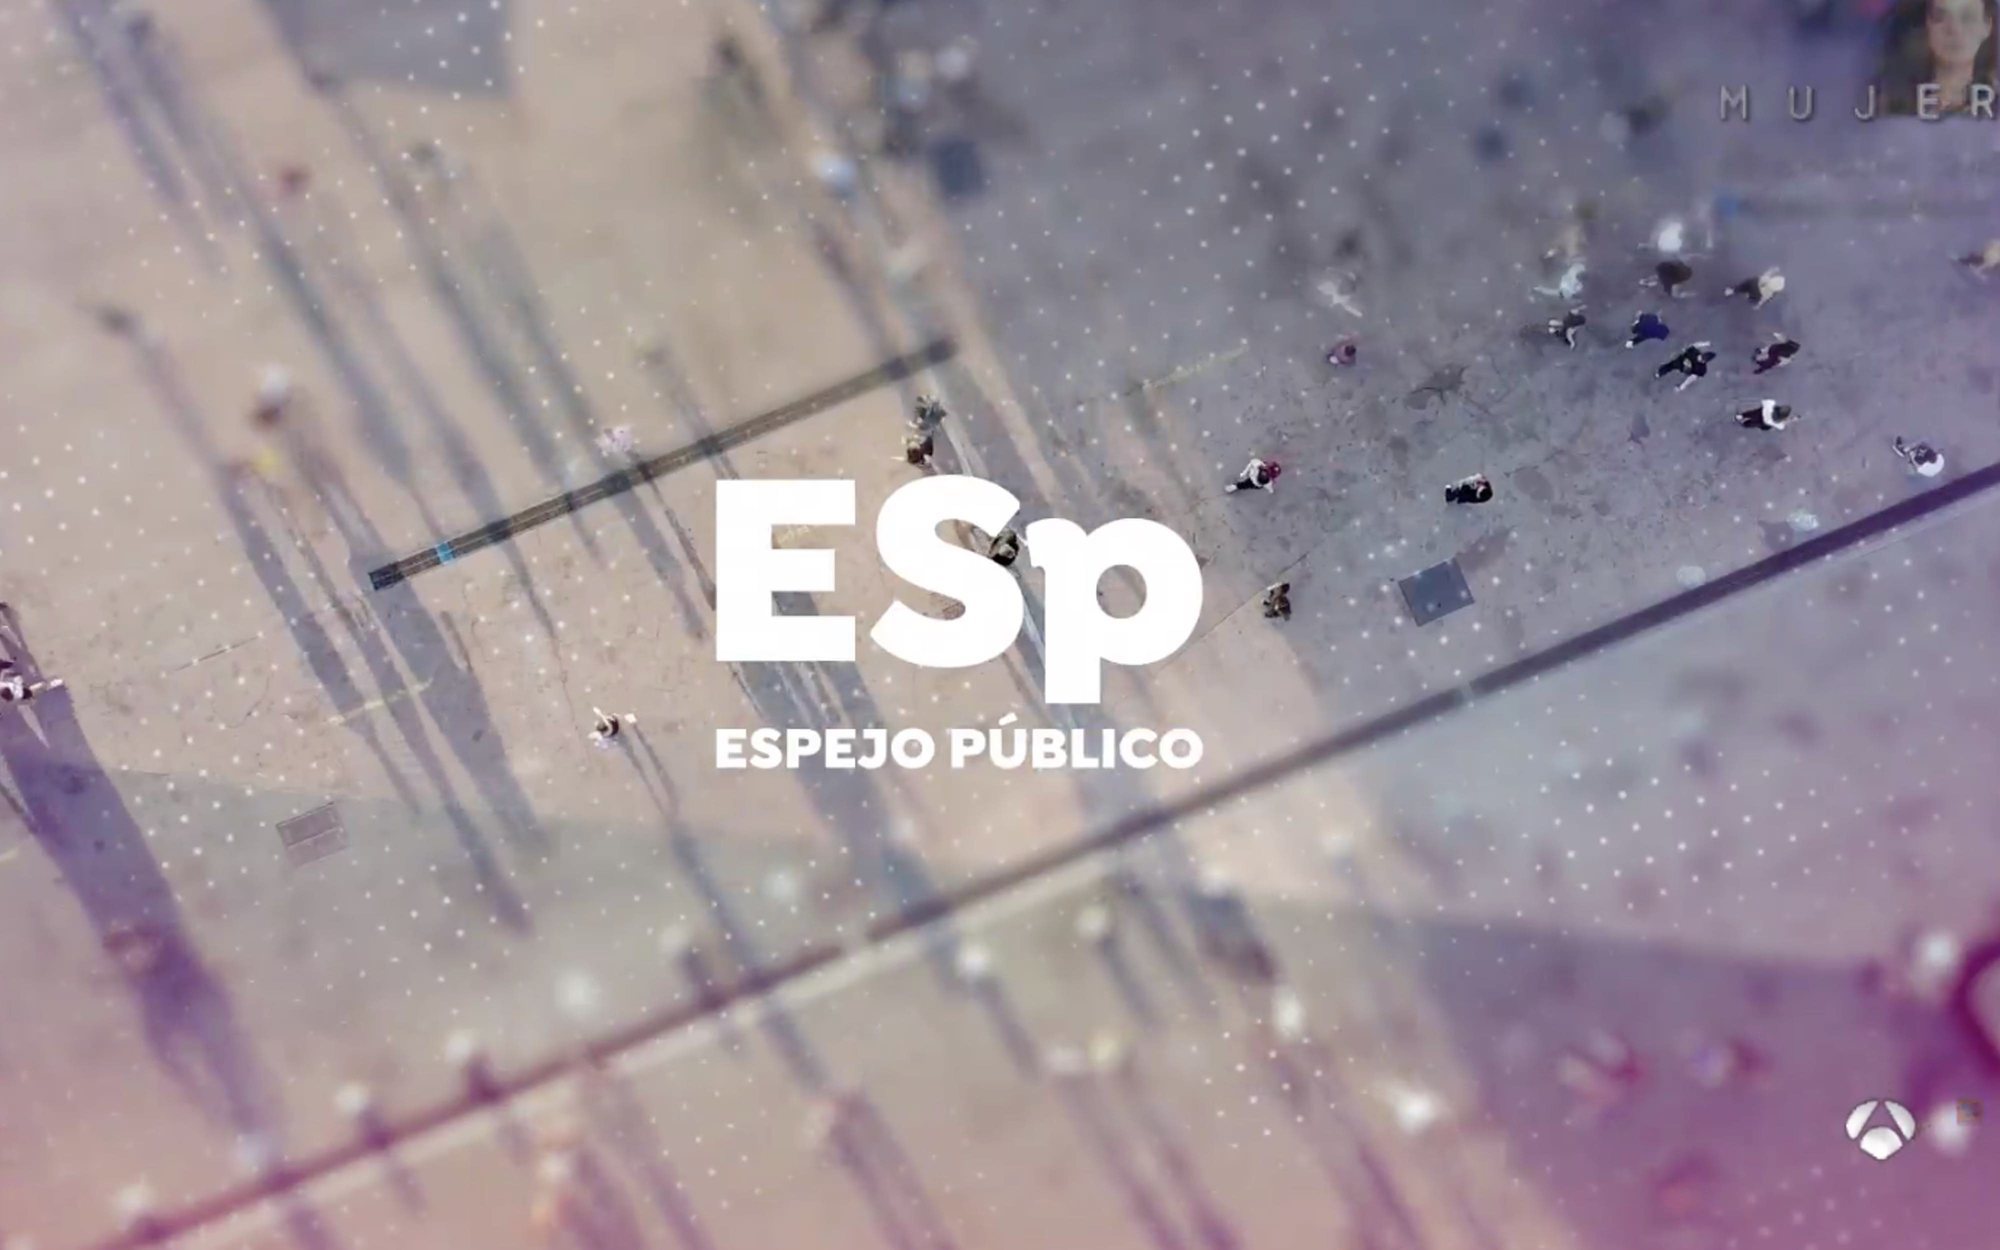 'Espejo público' estrena temporada con cambios en imagen, plató y con entrevista a Pablo Casado